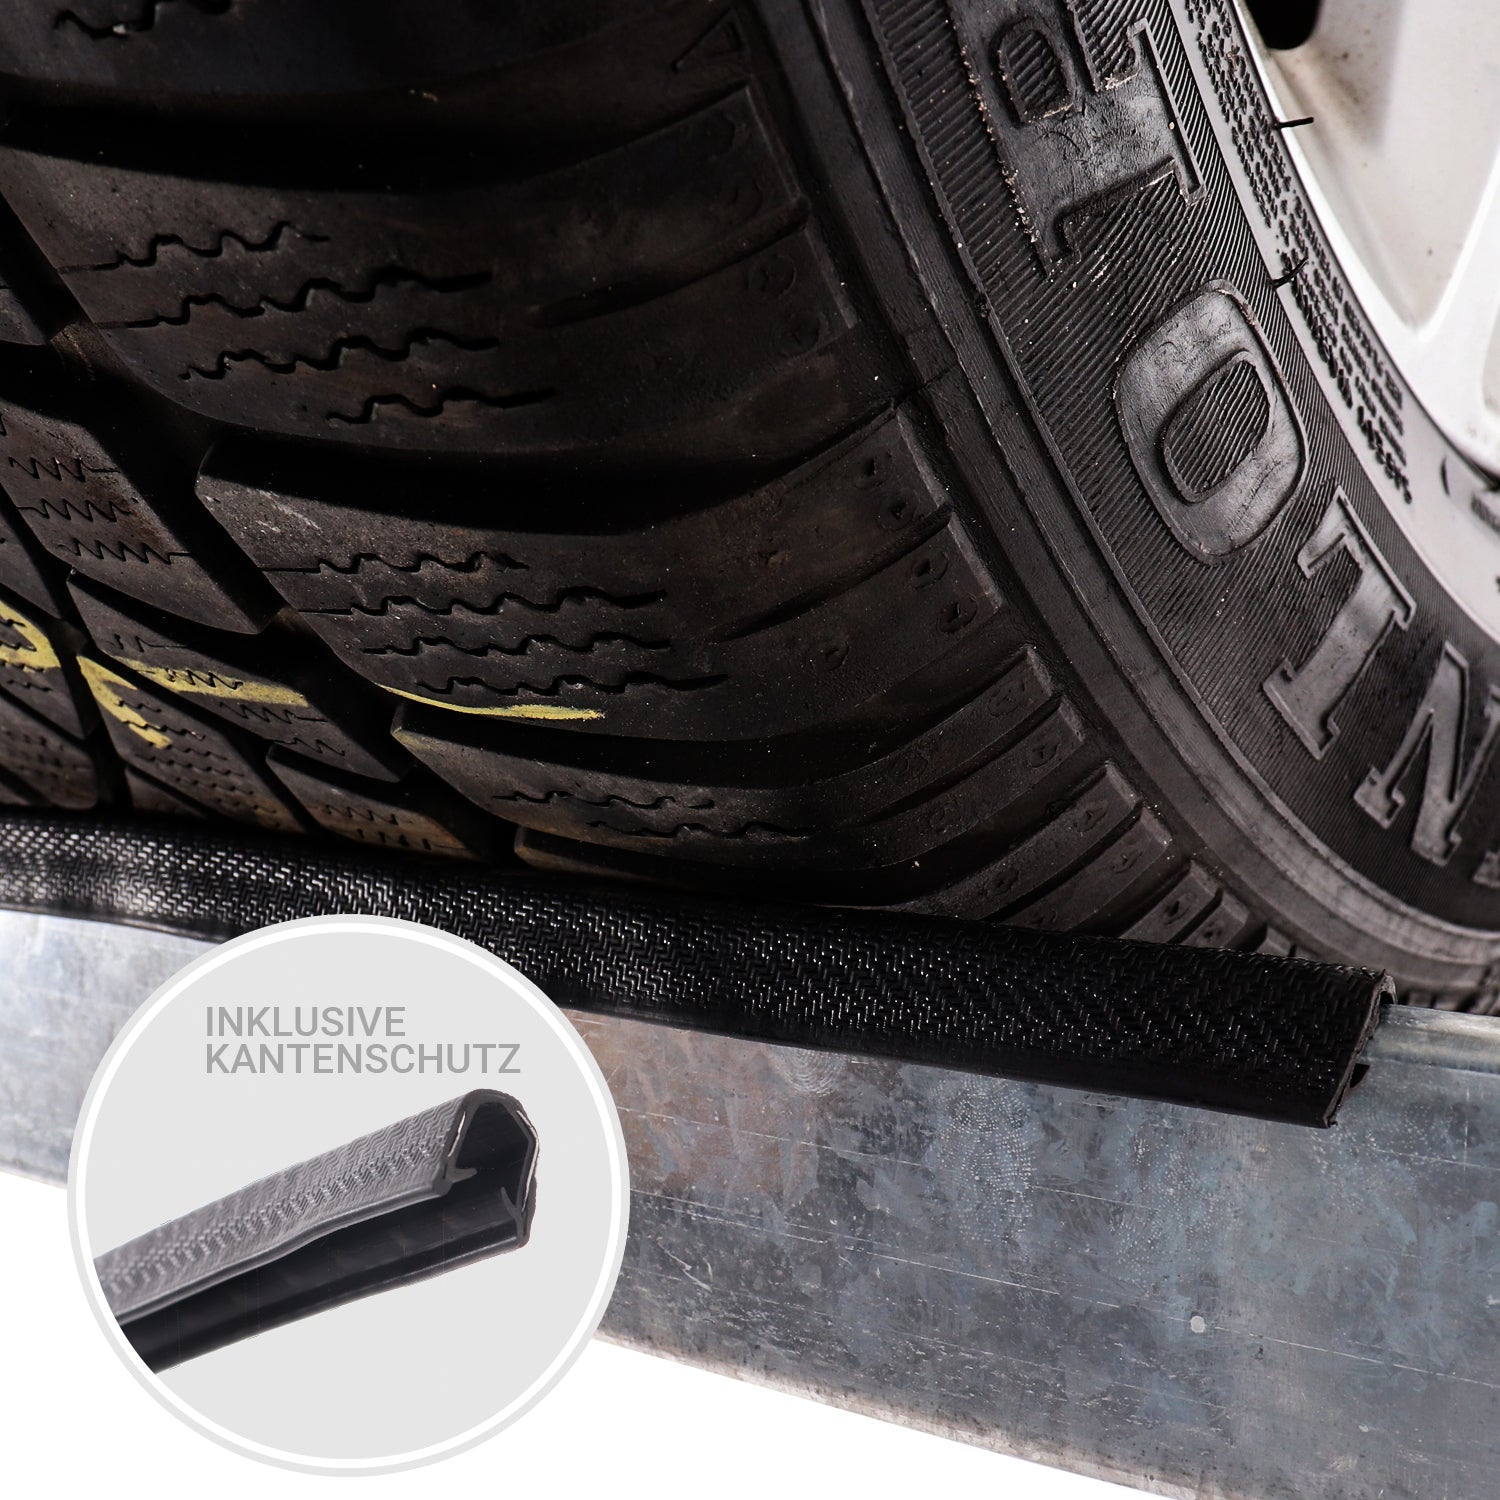 Belko® Reifenregal T110, 180x120x40 cm, für 8 Reifen mit Kantenschutz und Ablage, max. 200 kg Tragkraft, verzinkt